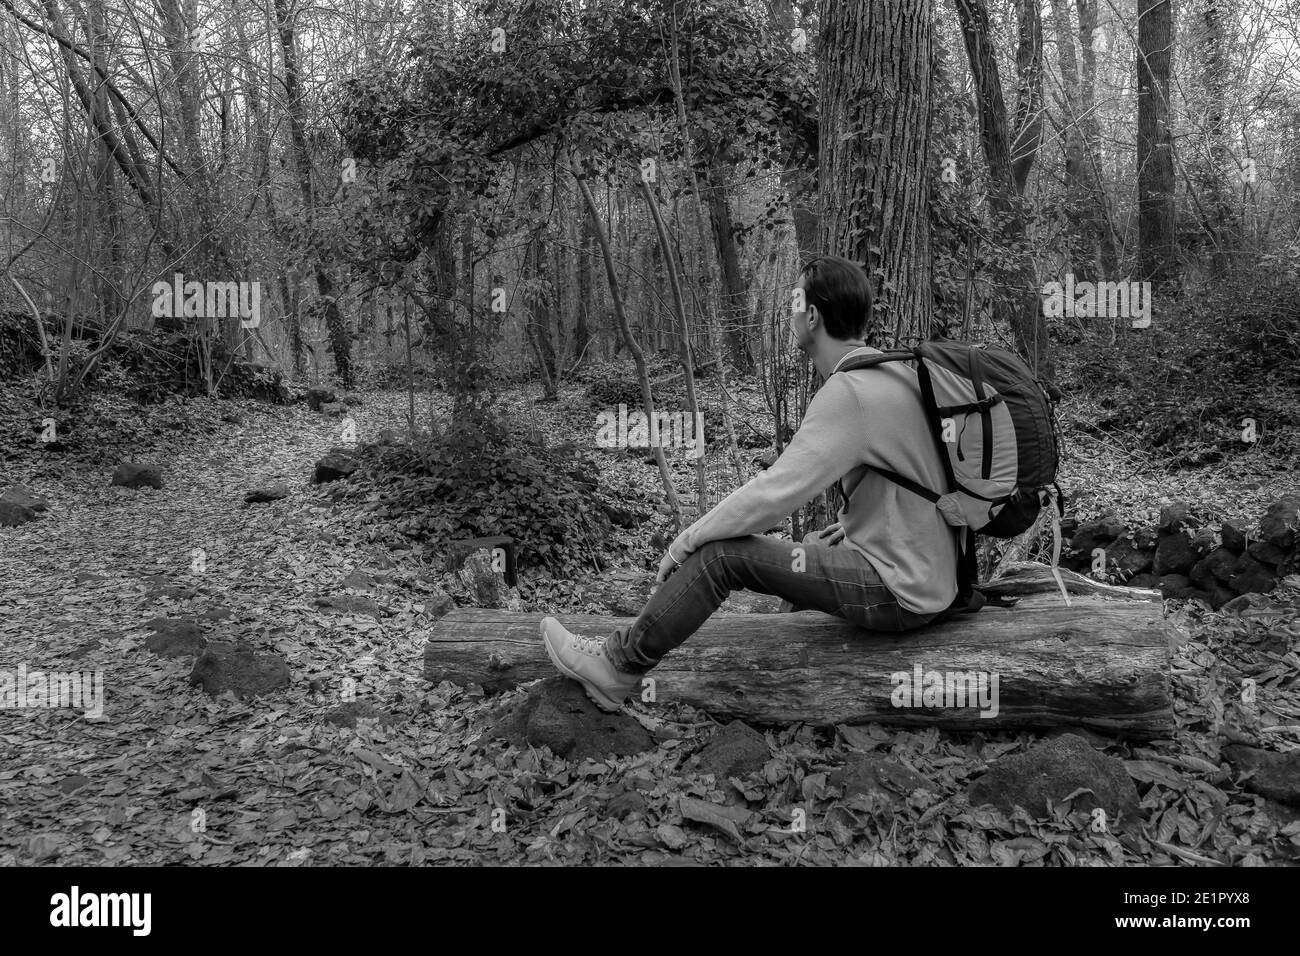 Hombre sentado con mochila en los bosques mirando horizonte en el bosque.con estilo Estilo de vida al aire libre del excursionista.concepto del wanderlust del recorrido.Fotografía del blanco y negro wit Foto de stock